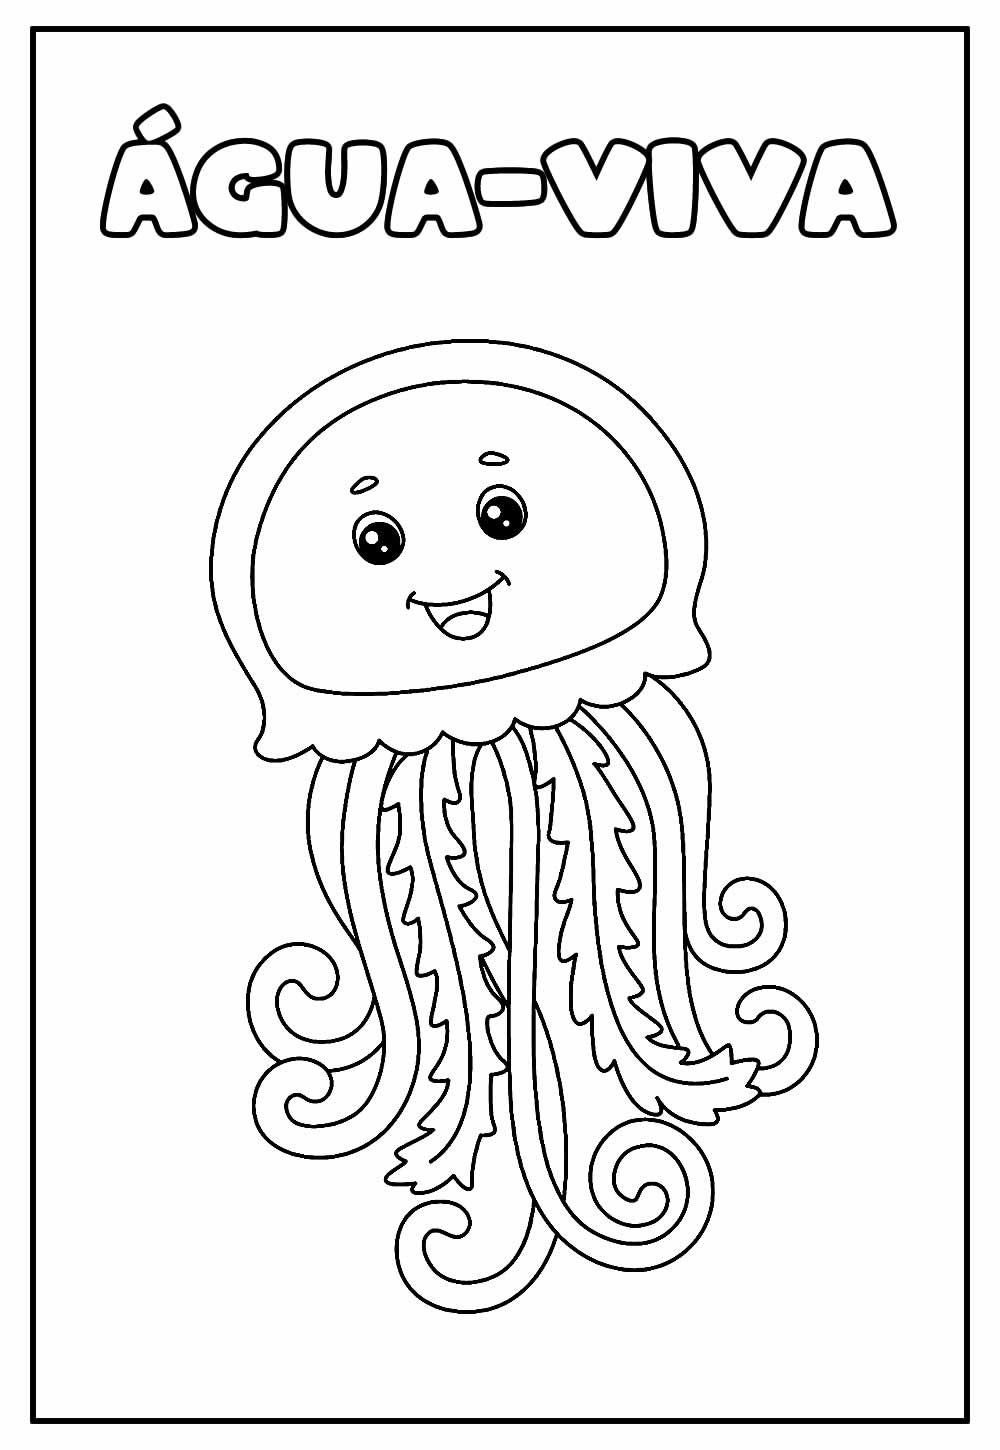 Desenhos fáceis para você fazer #16 (Água-viva) .. #aguaviva #jelly